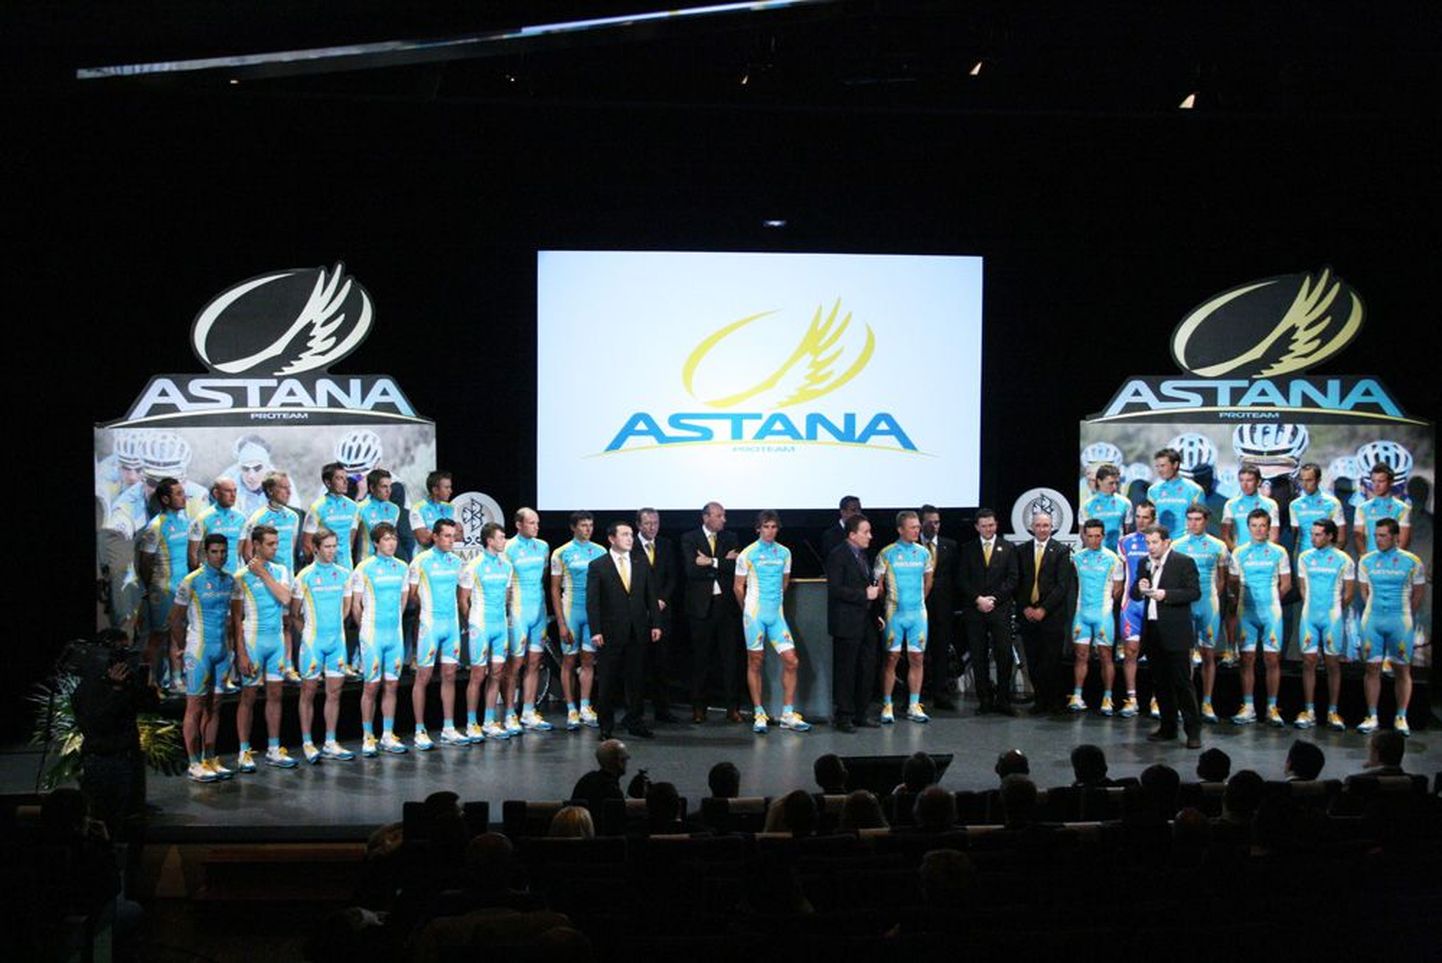 Astana meeskonna esitlust oli tulnud vaatama mõnisada kutsetega külalist.